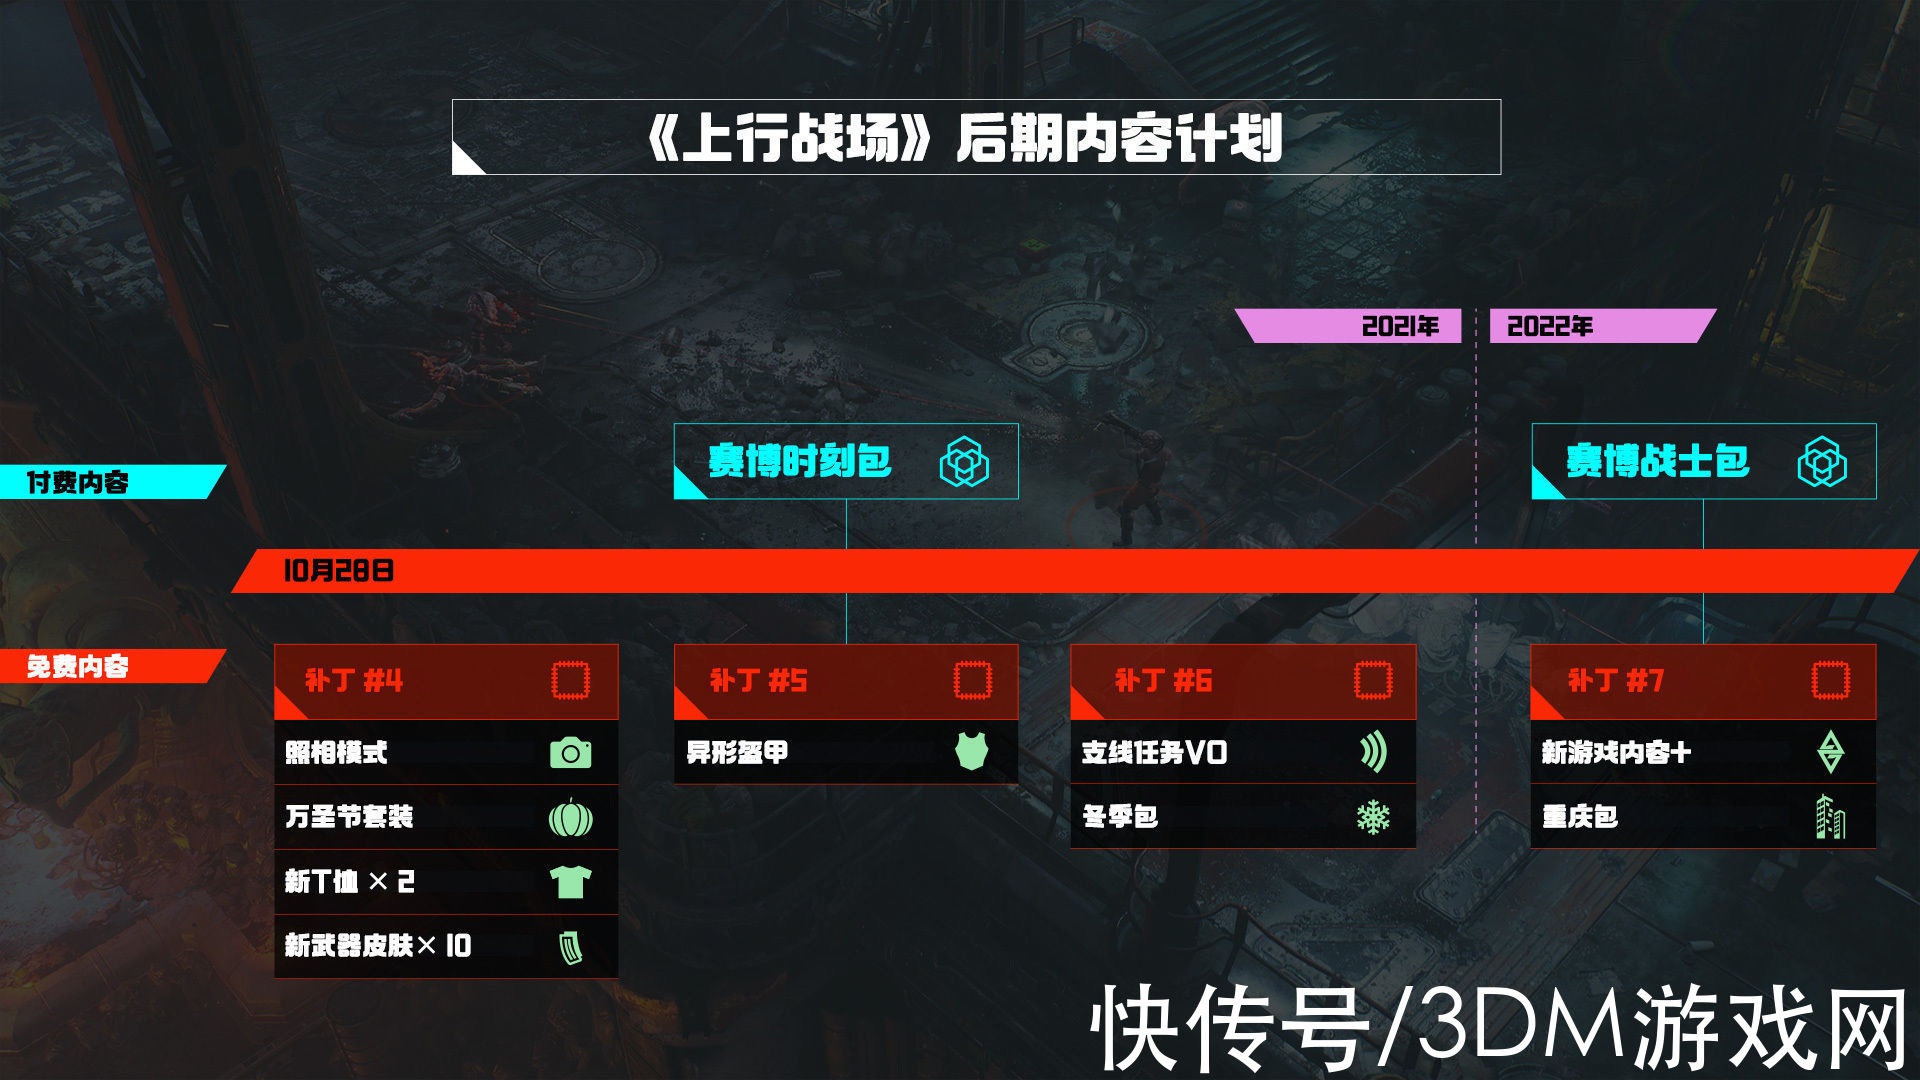 arpg|《上行战场》更新路线图公布 新DLC即将上线